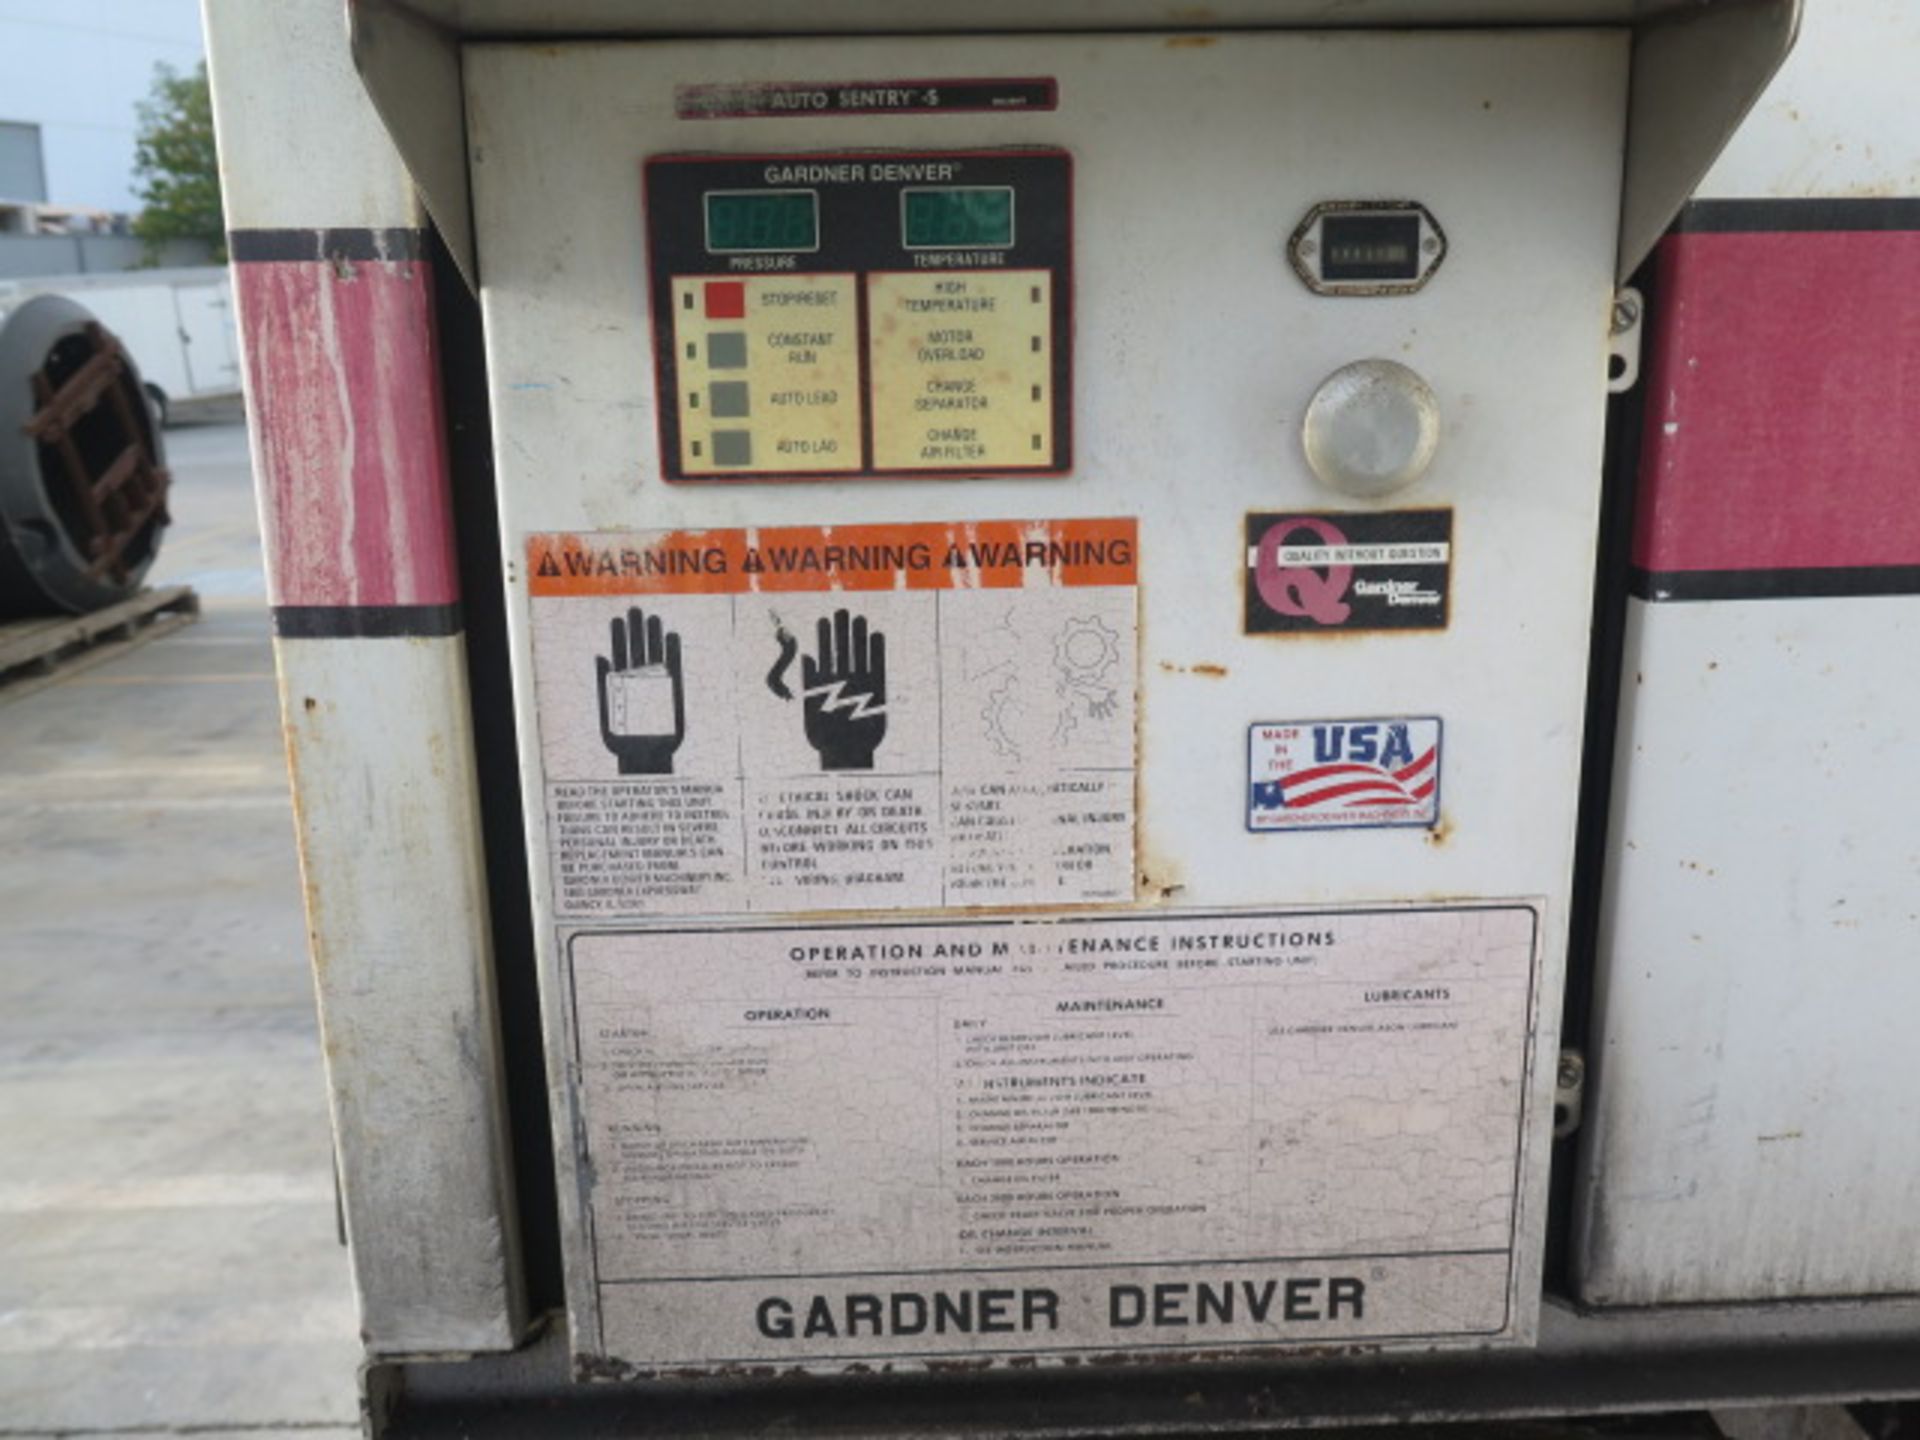 Gardner Denver "Eletrs-Screw" 25Hp Rotary Screw Air Compressor w/ Auto Sentry-S Controls - Image 3 of 6